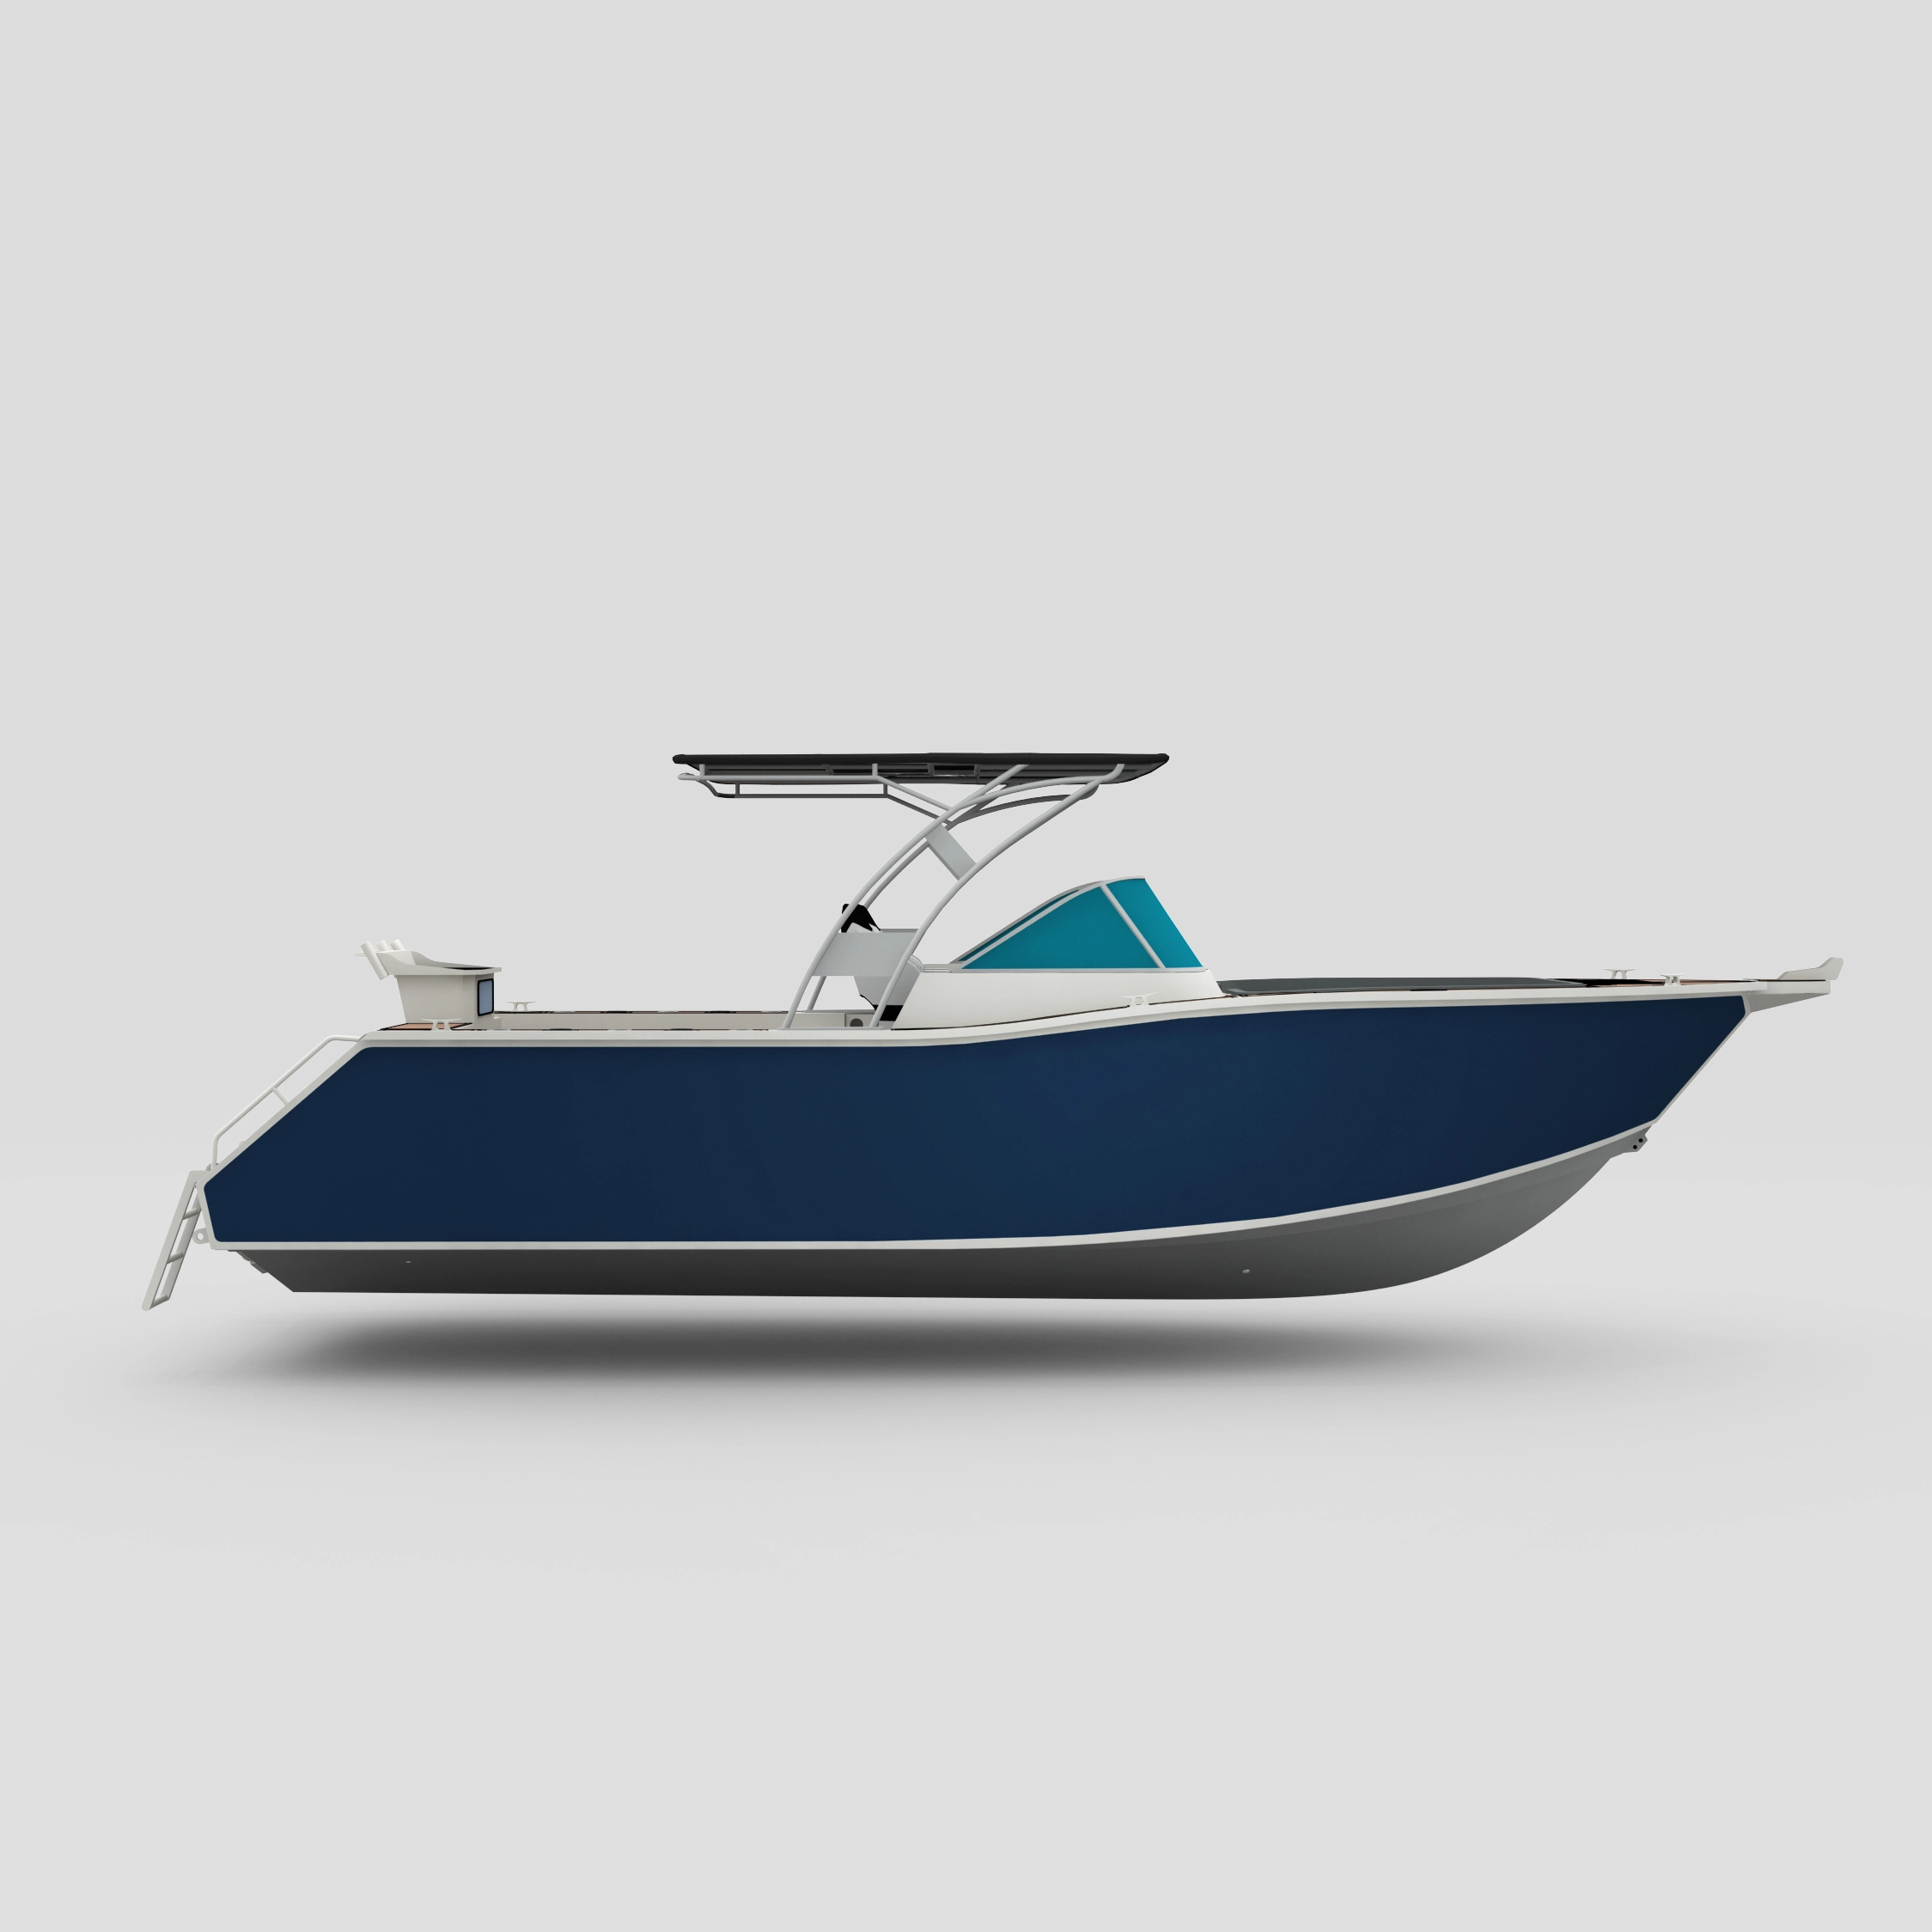 Profisher 750 Bowriderblack Aluminum Fishing Boat